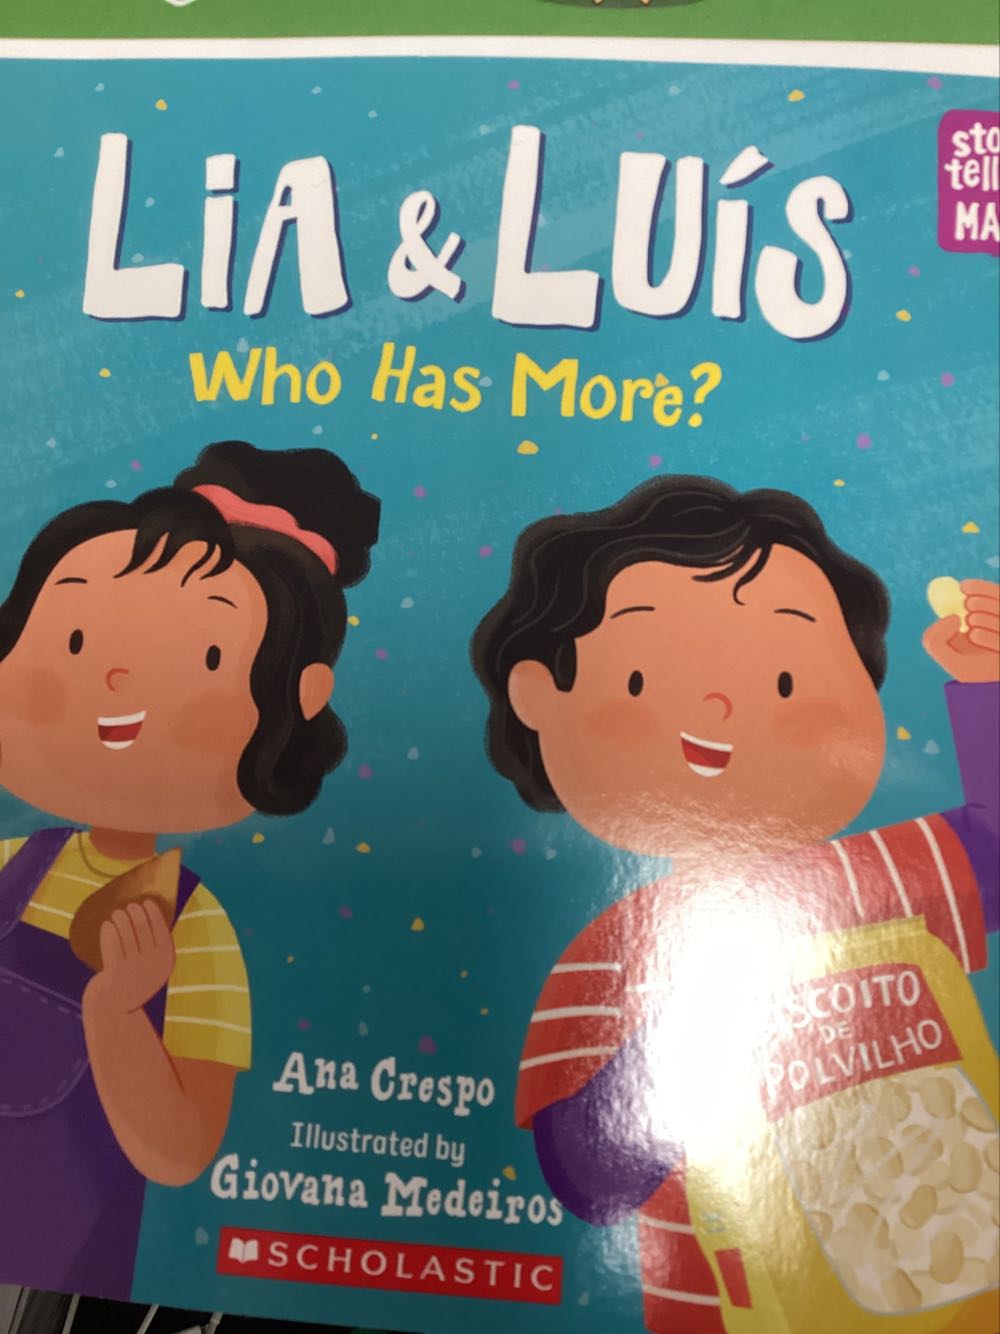 Lia & Luís - Ana Crespo (Scholastic) book collectible [Barcode 9781338776744] - Main Image 1